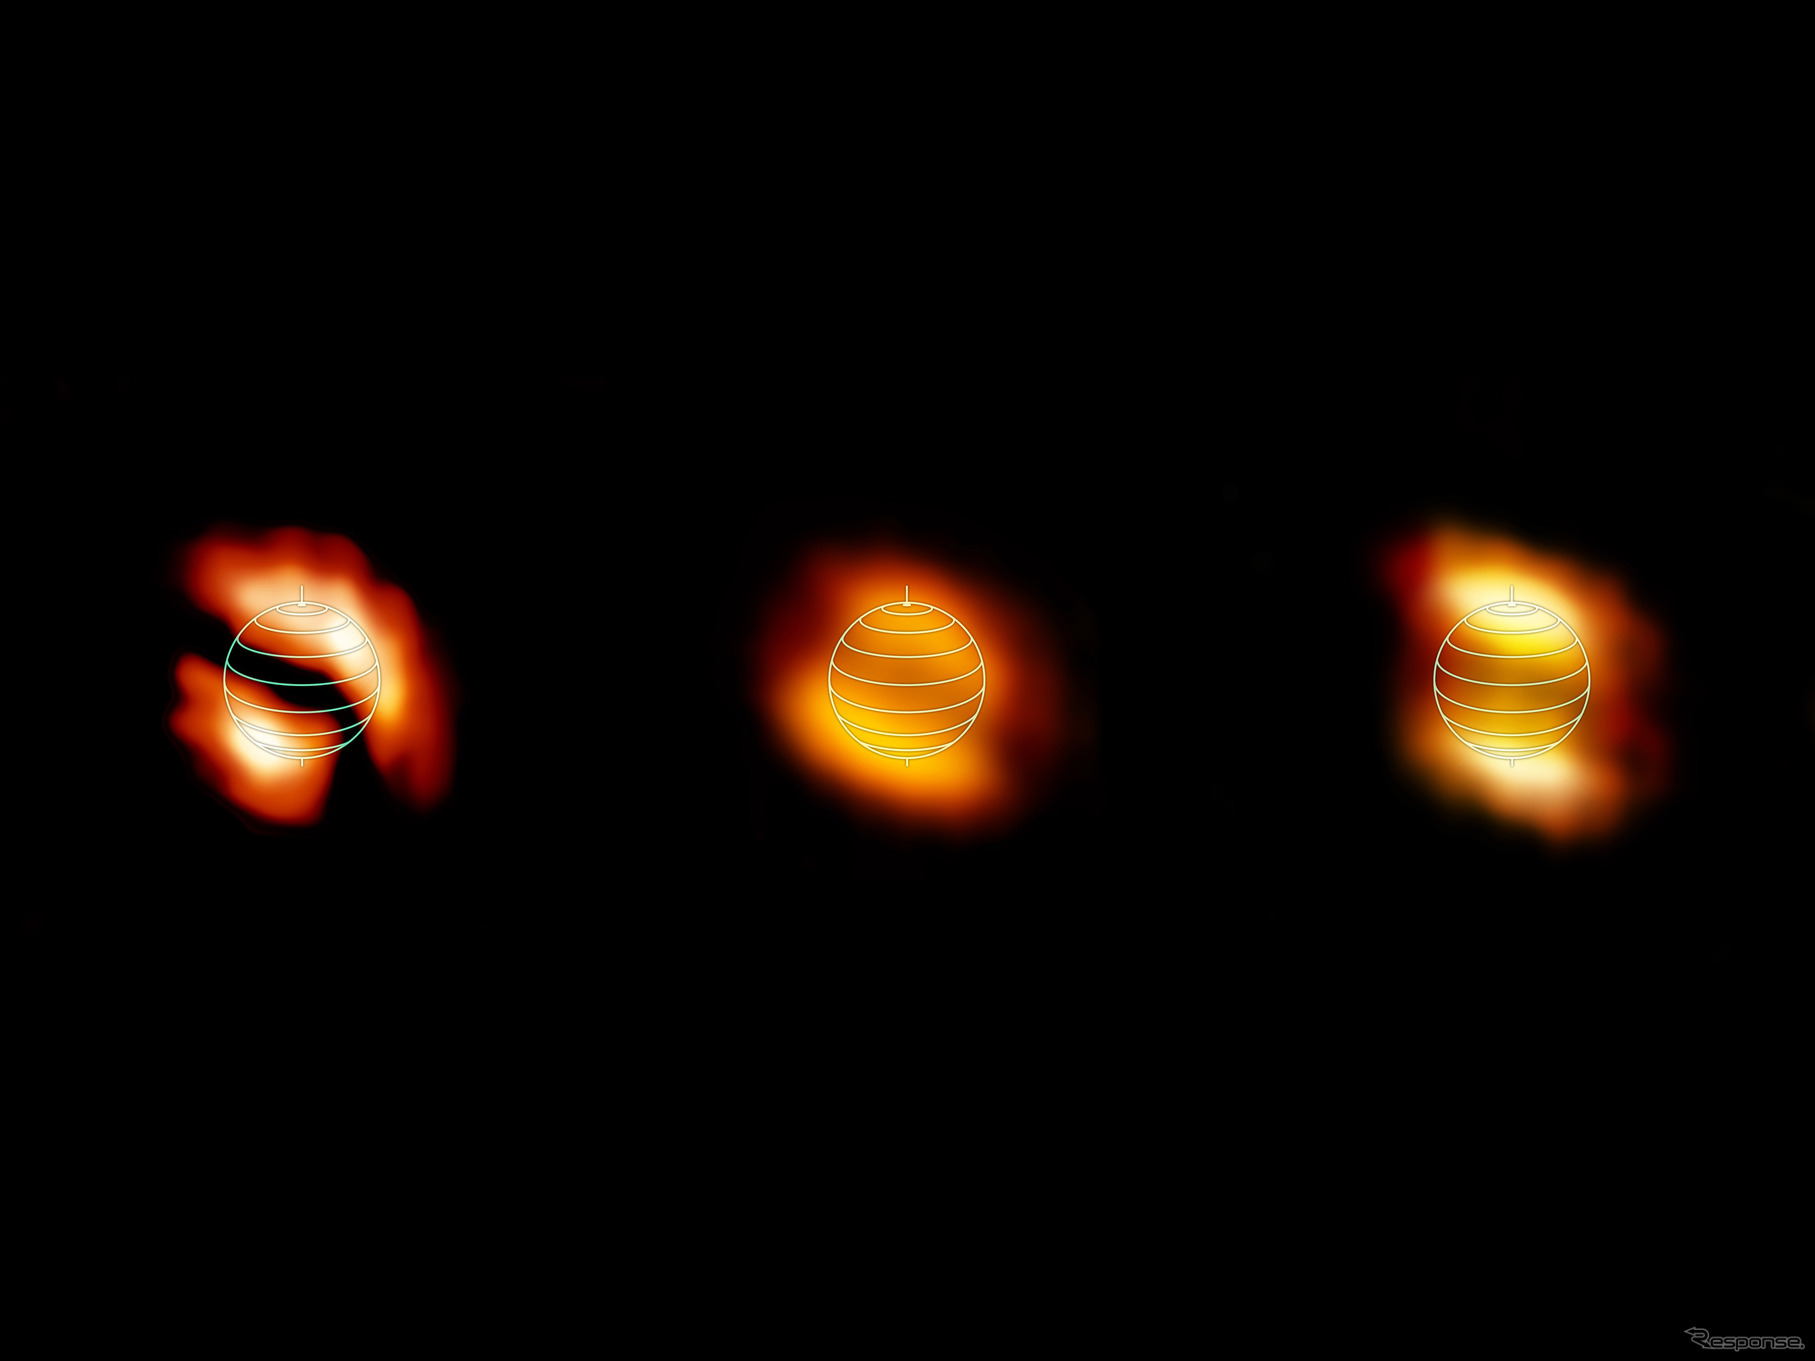 アルマ望遠鏡、タイタンの大気中で有機分子の偏りを発見